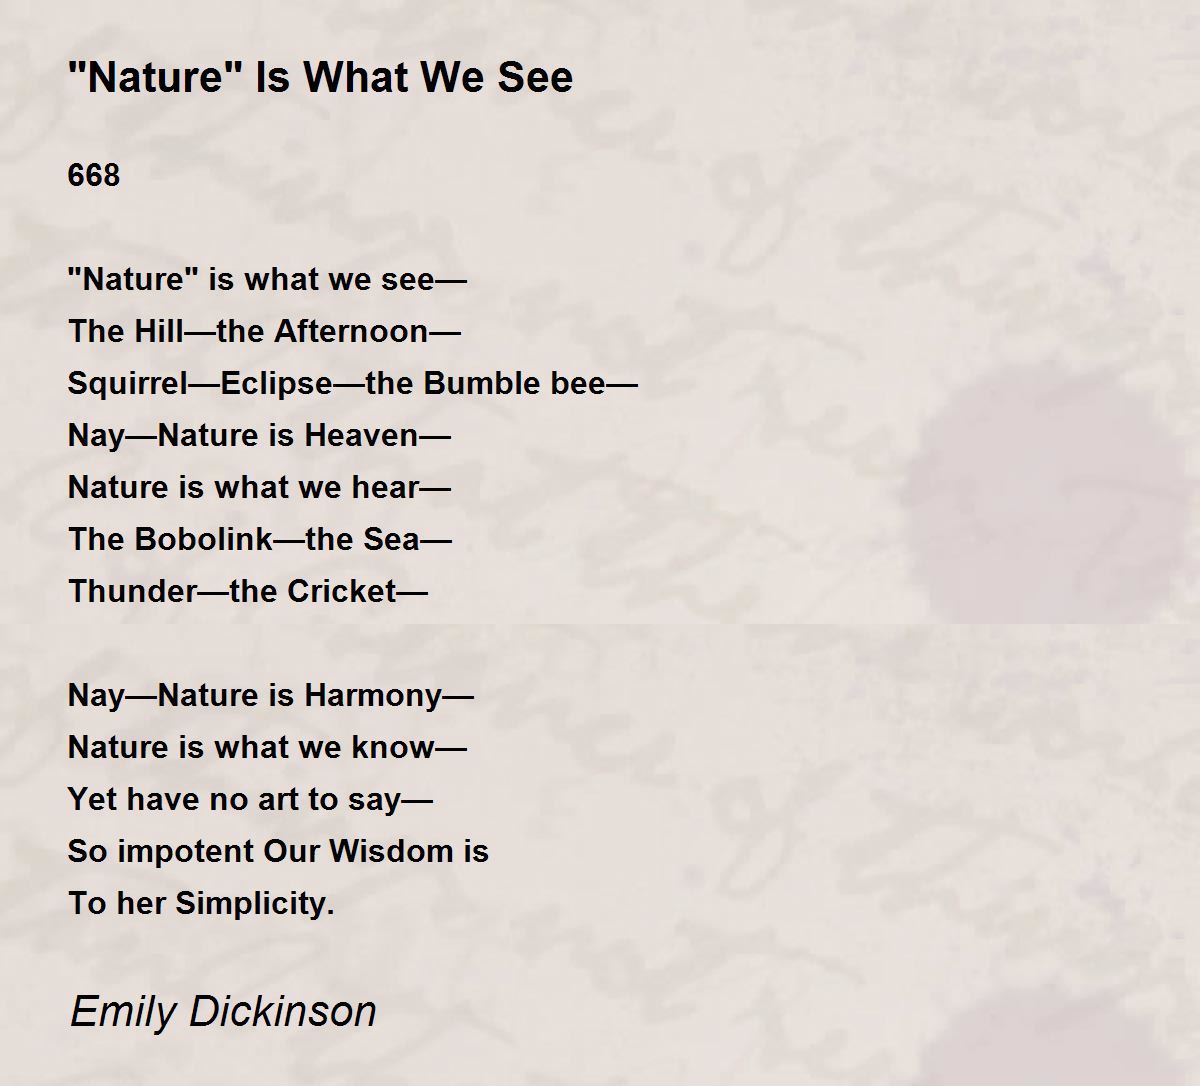 emily dickinson poem 49 analysis